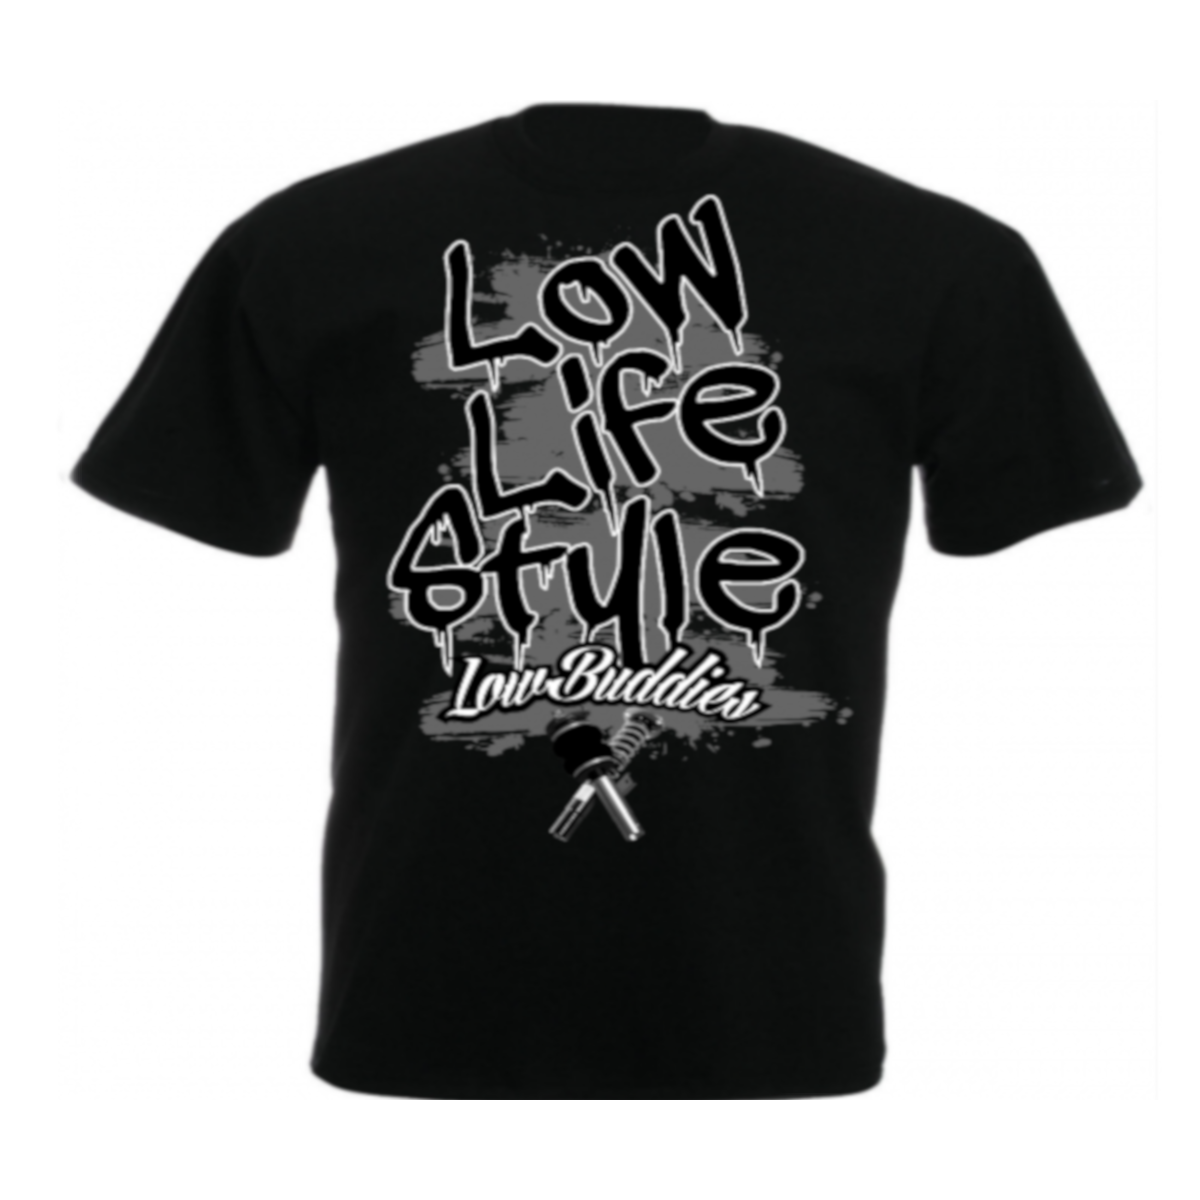 Low Buddies - Männer T-Shirt - Low lifestyle - schwarz